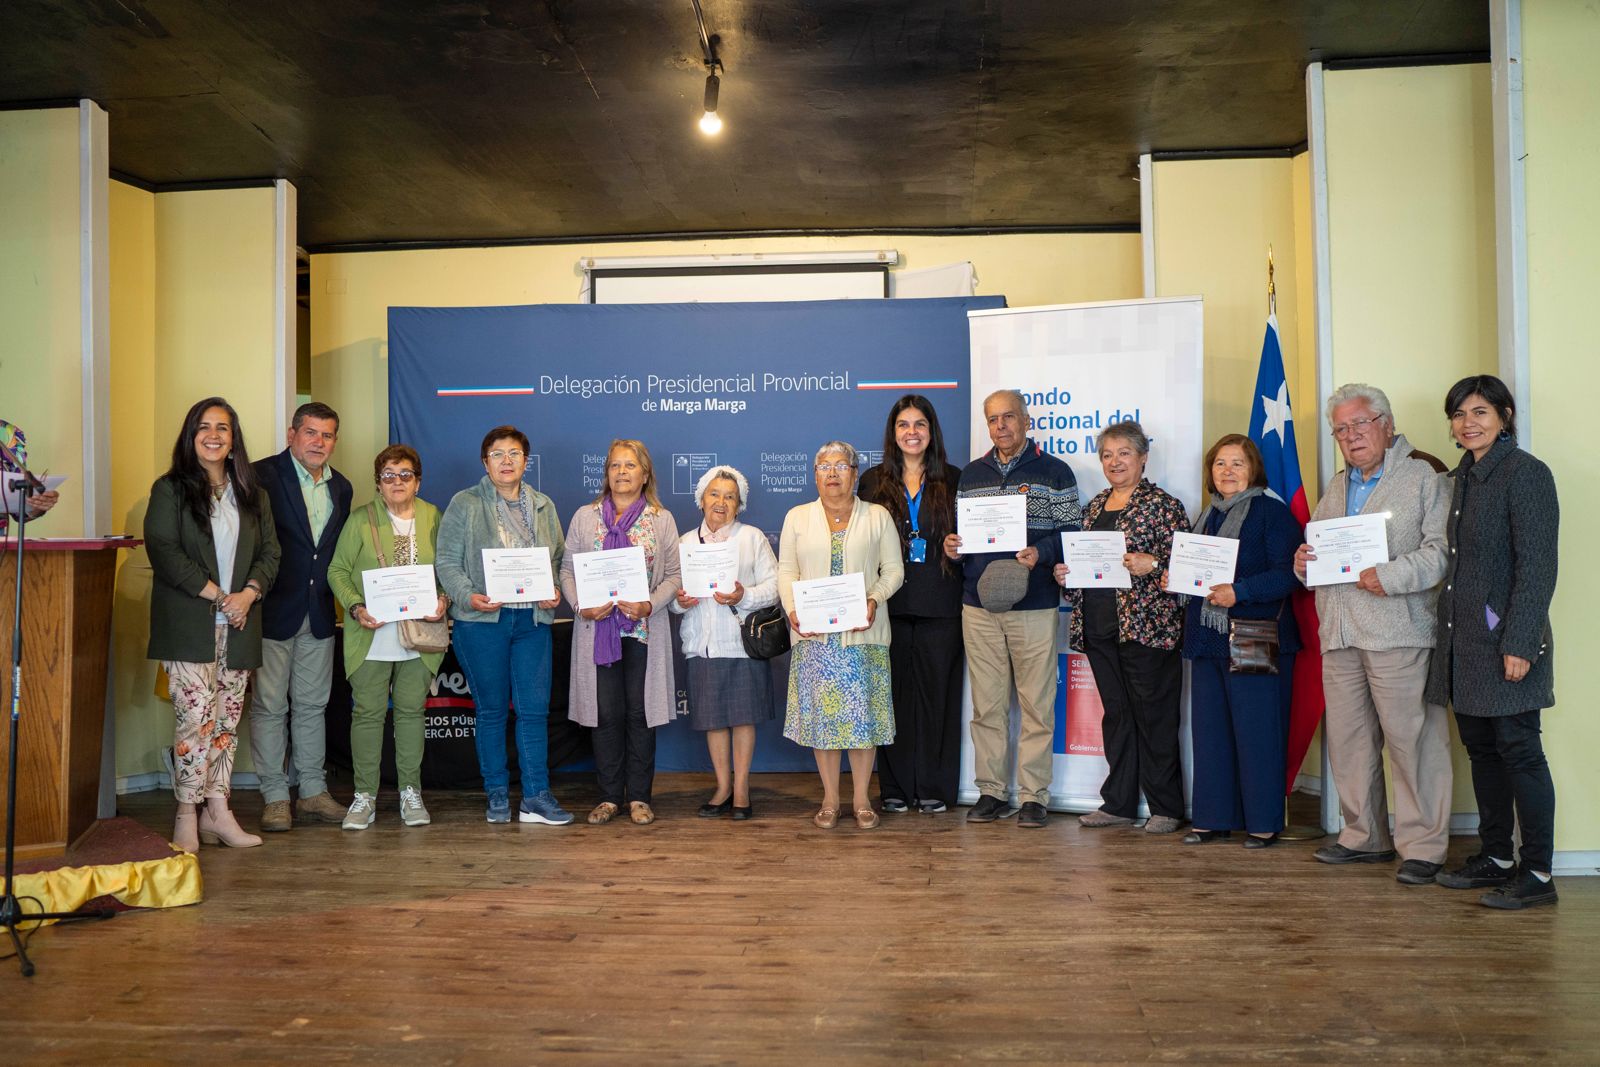 Organizaciones de personas mayores de la provincia de Marga Marga reciben certificación por el Fondo Nacional del Adulto Mayor “Hernán Zapata Farías” 2023